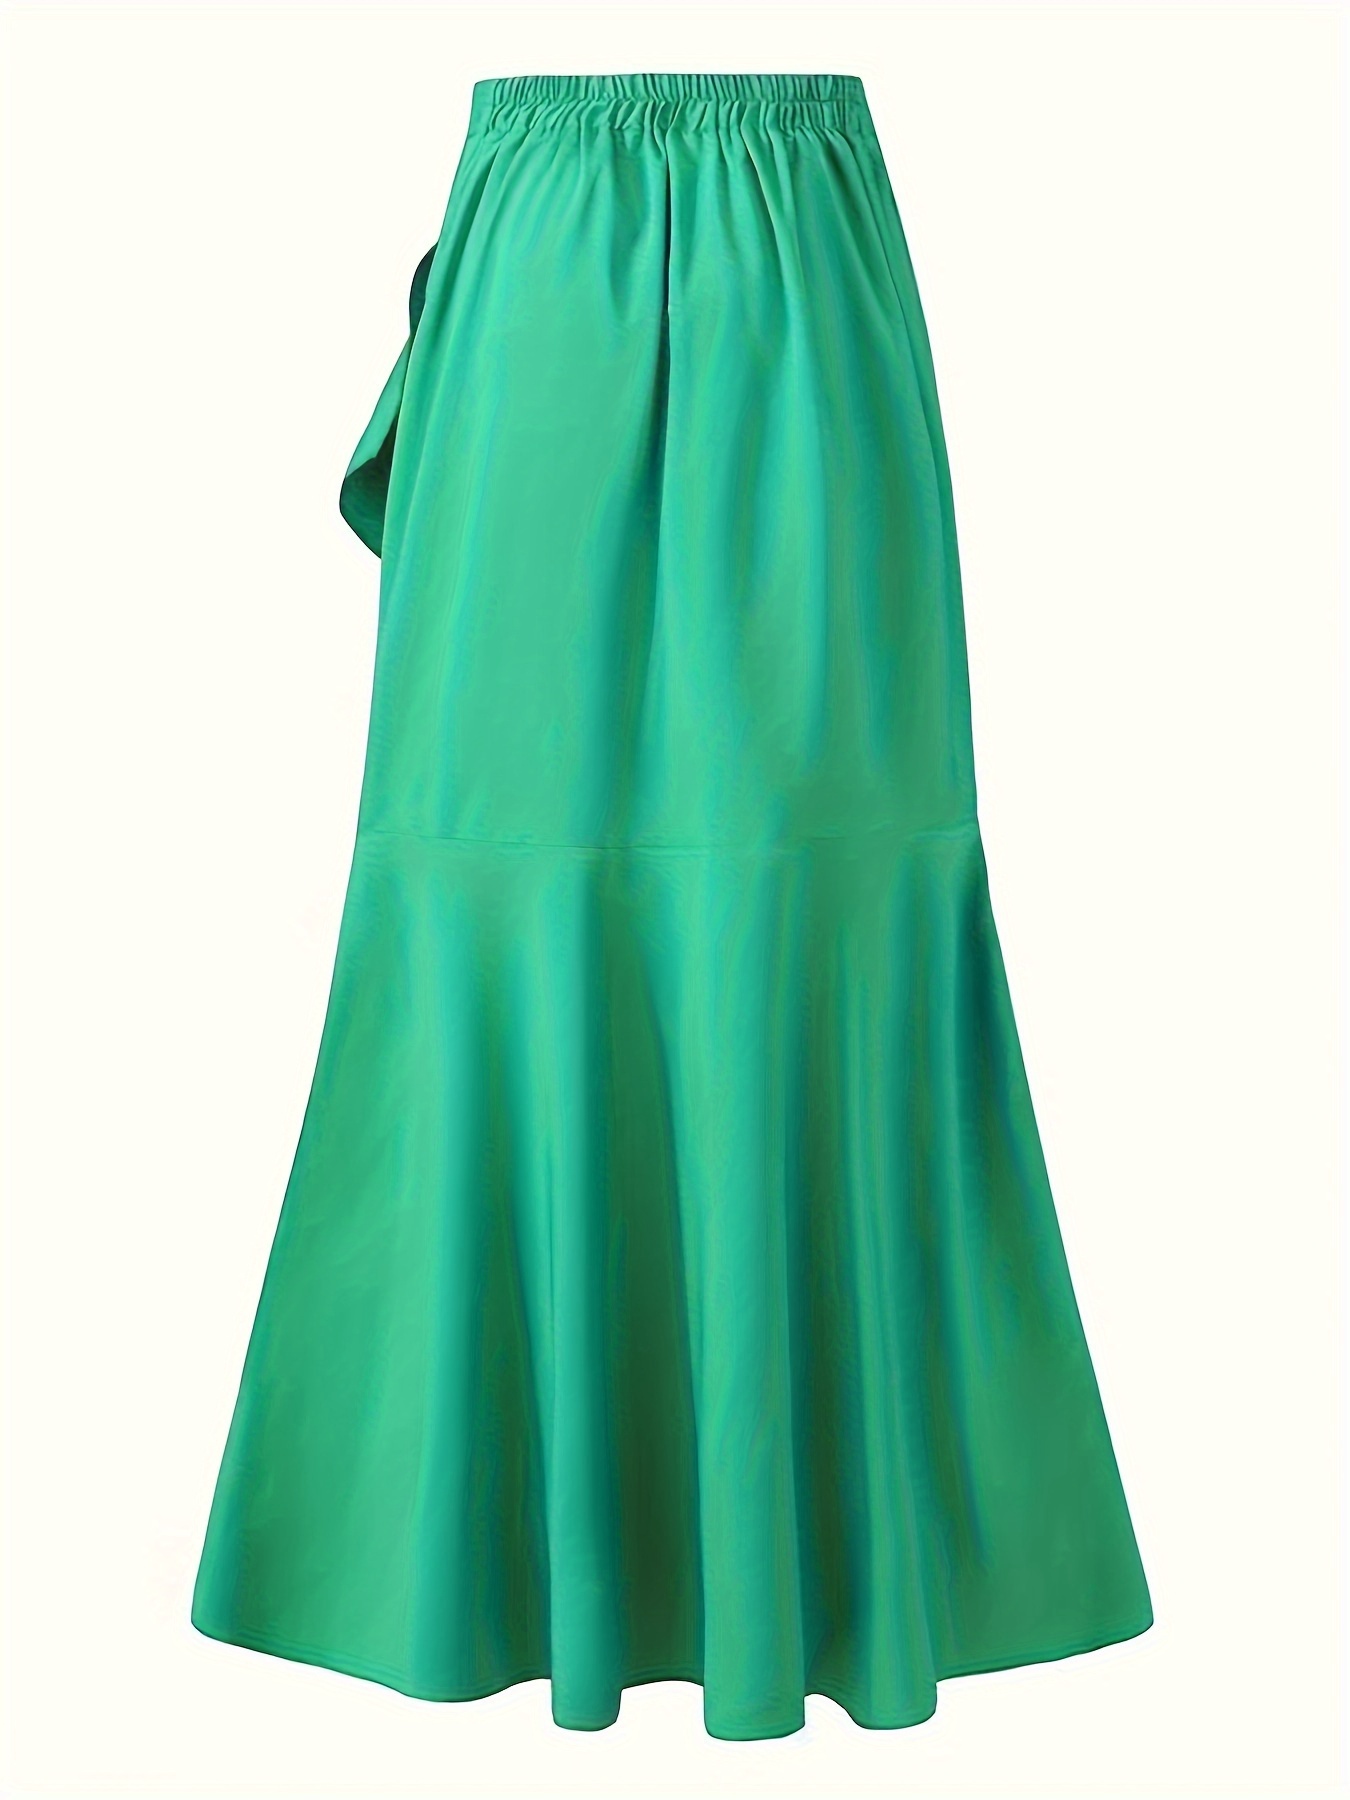 Solid Ruffle Trim Asymmetrical Skirt, Elegant Belted Mermaid Skirt For ...